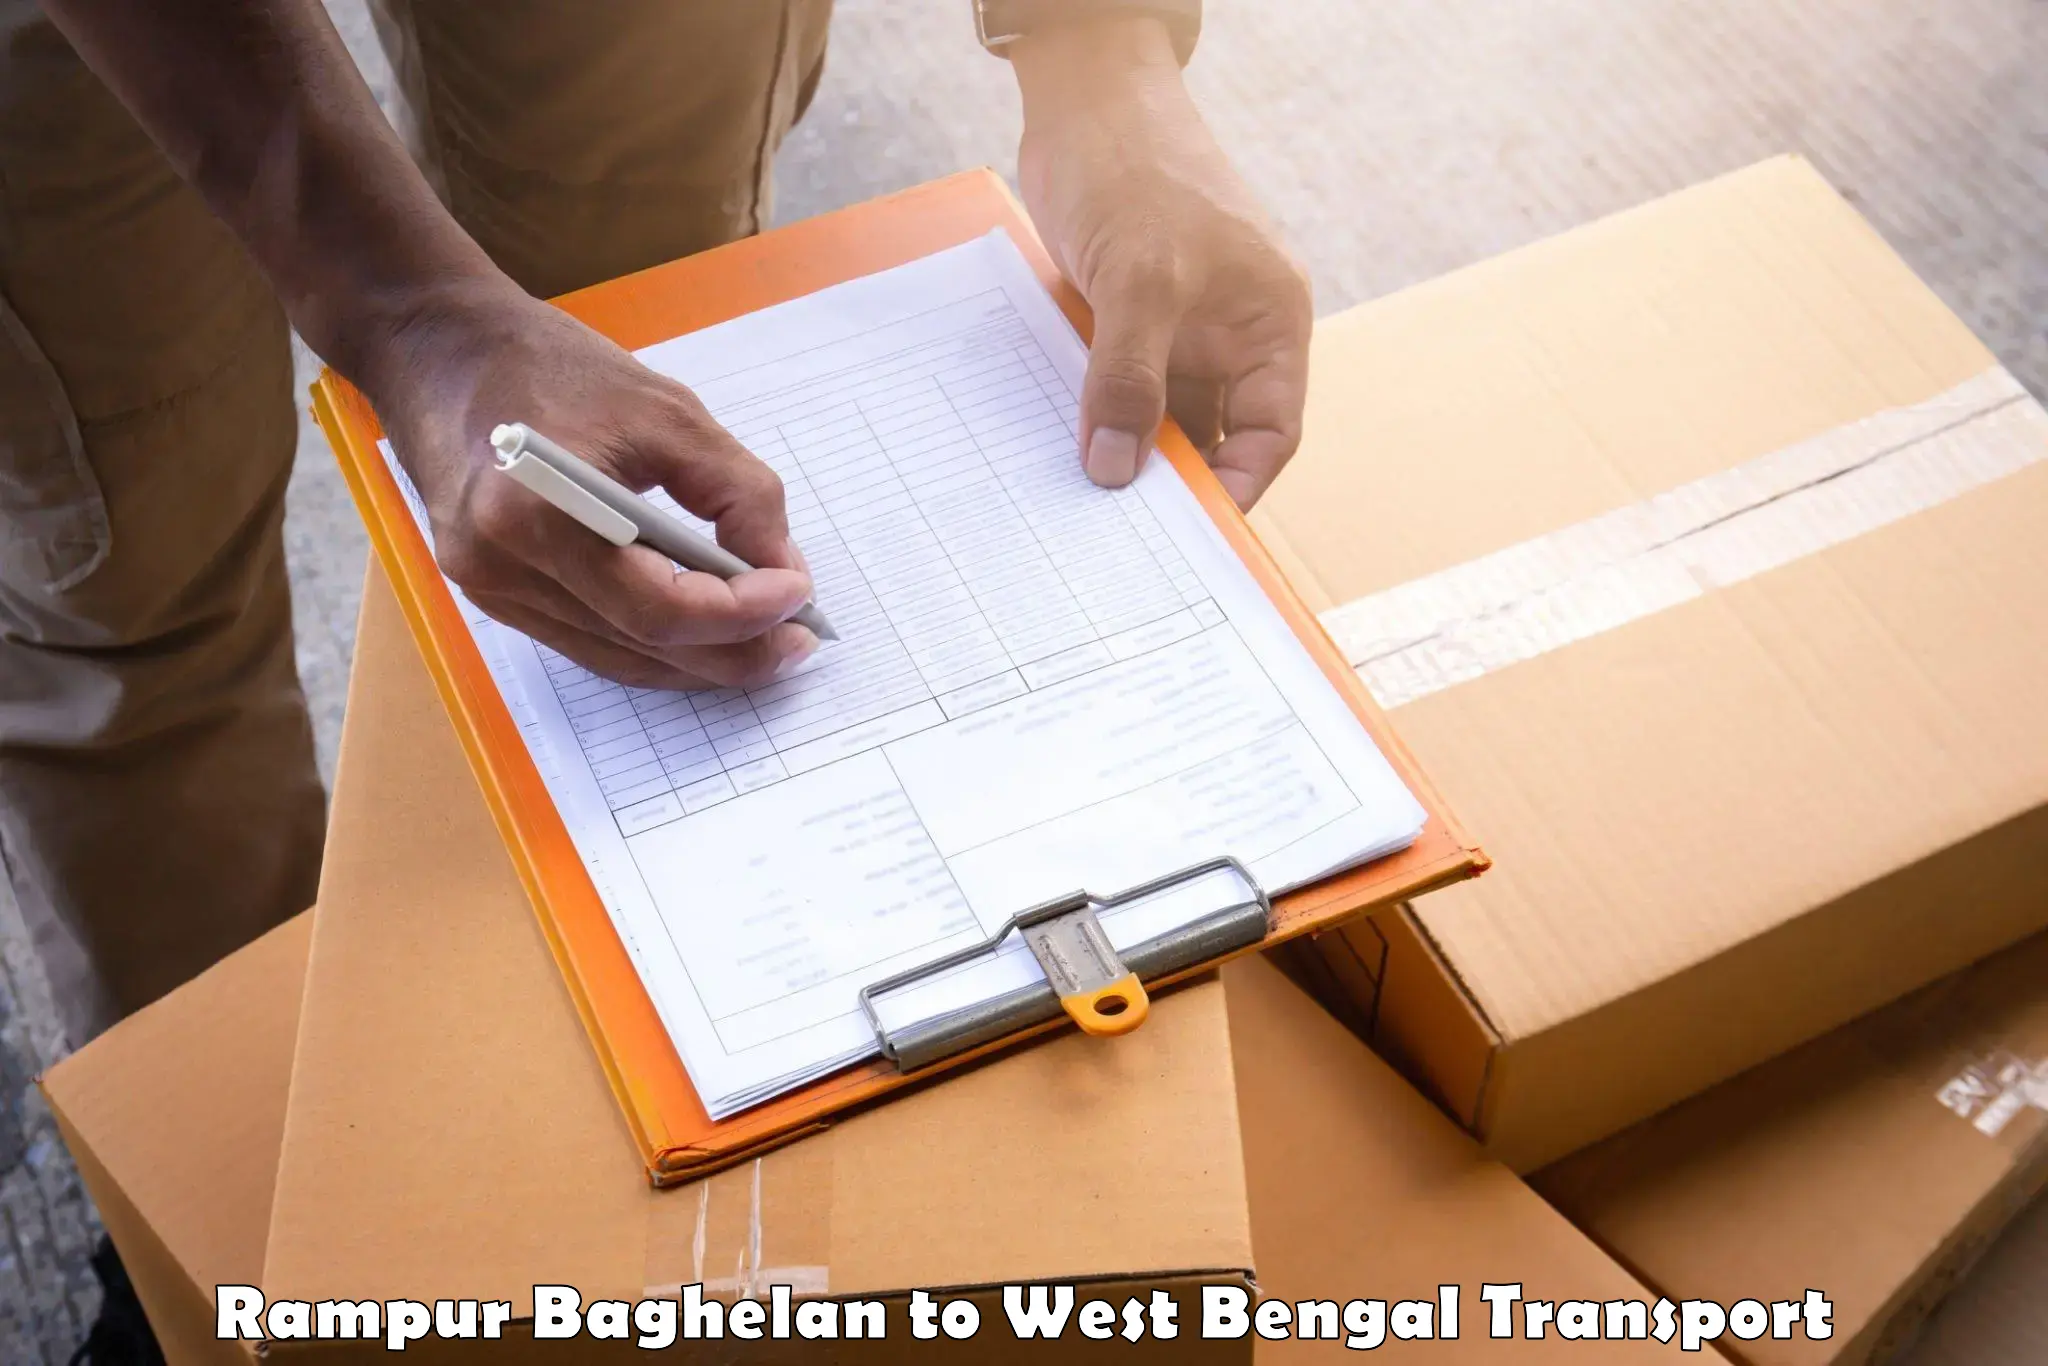 Pick up transport service Rampur Baghelan to Dakshin Barasat